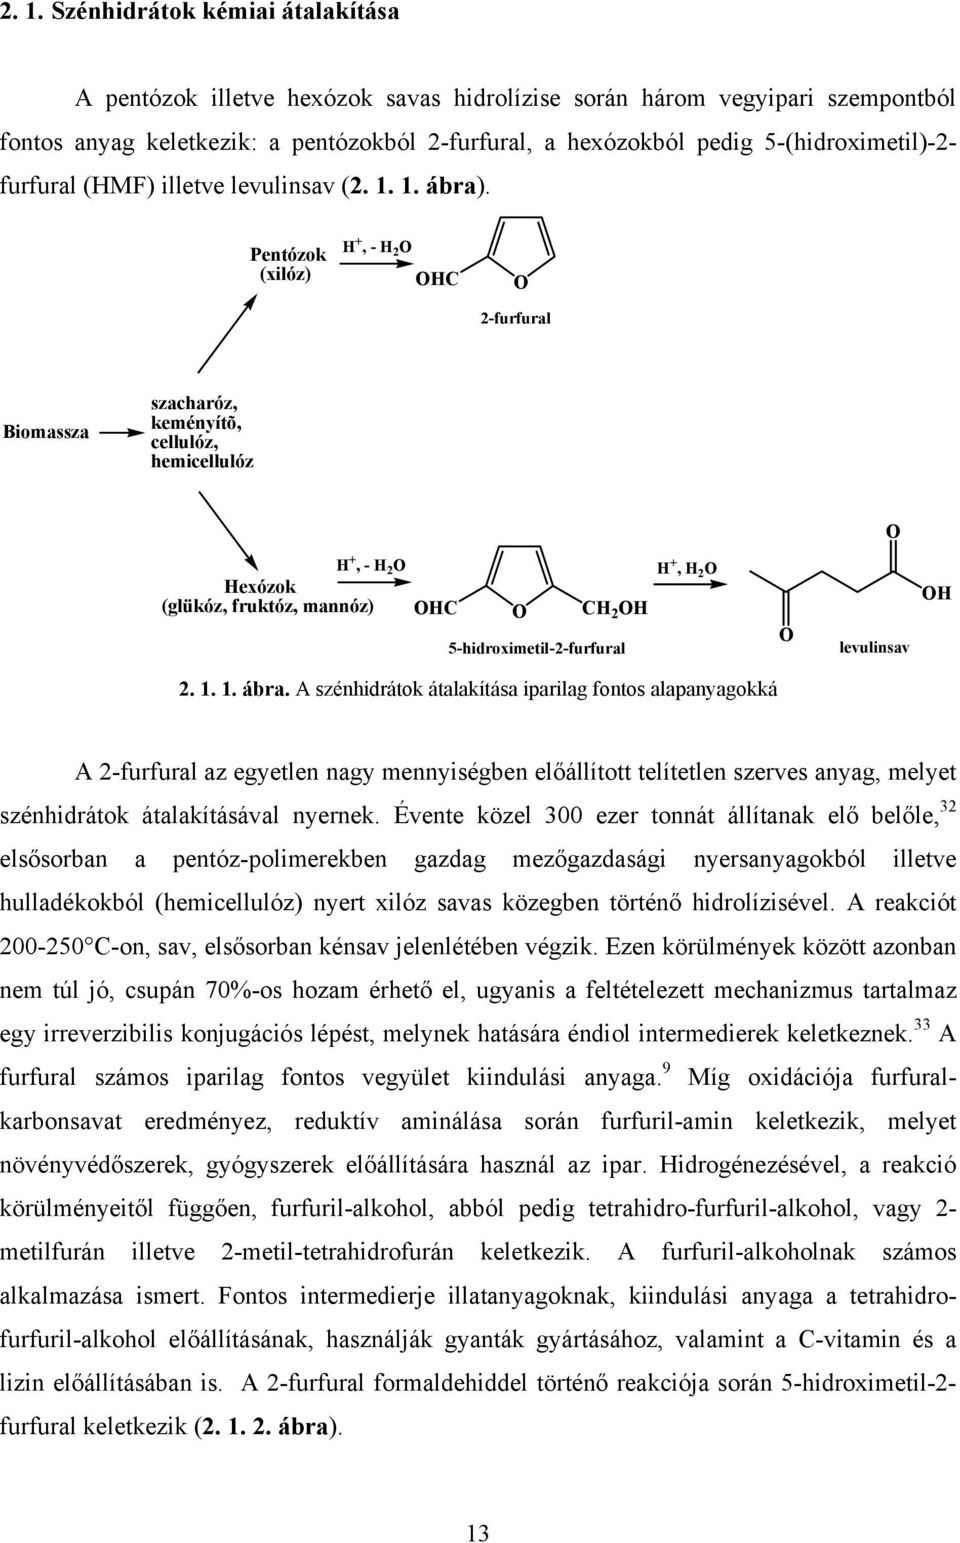 Pentózok (xilóz) +, - 2 C 2-furfural Biomassza szacharóz, keményítõ, cellulóz, hemicellulóz +, - 2 exózok (glükóz, fruktóz, mannóz) C C 2 5-hidroximetil-2-furfural +, 2 levulinsav 2. 1. 1. ábra.